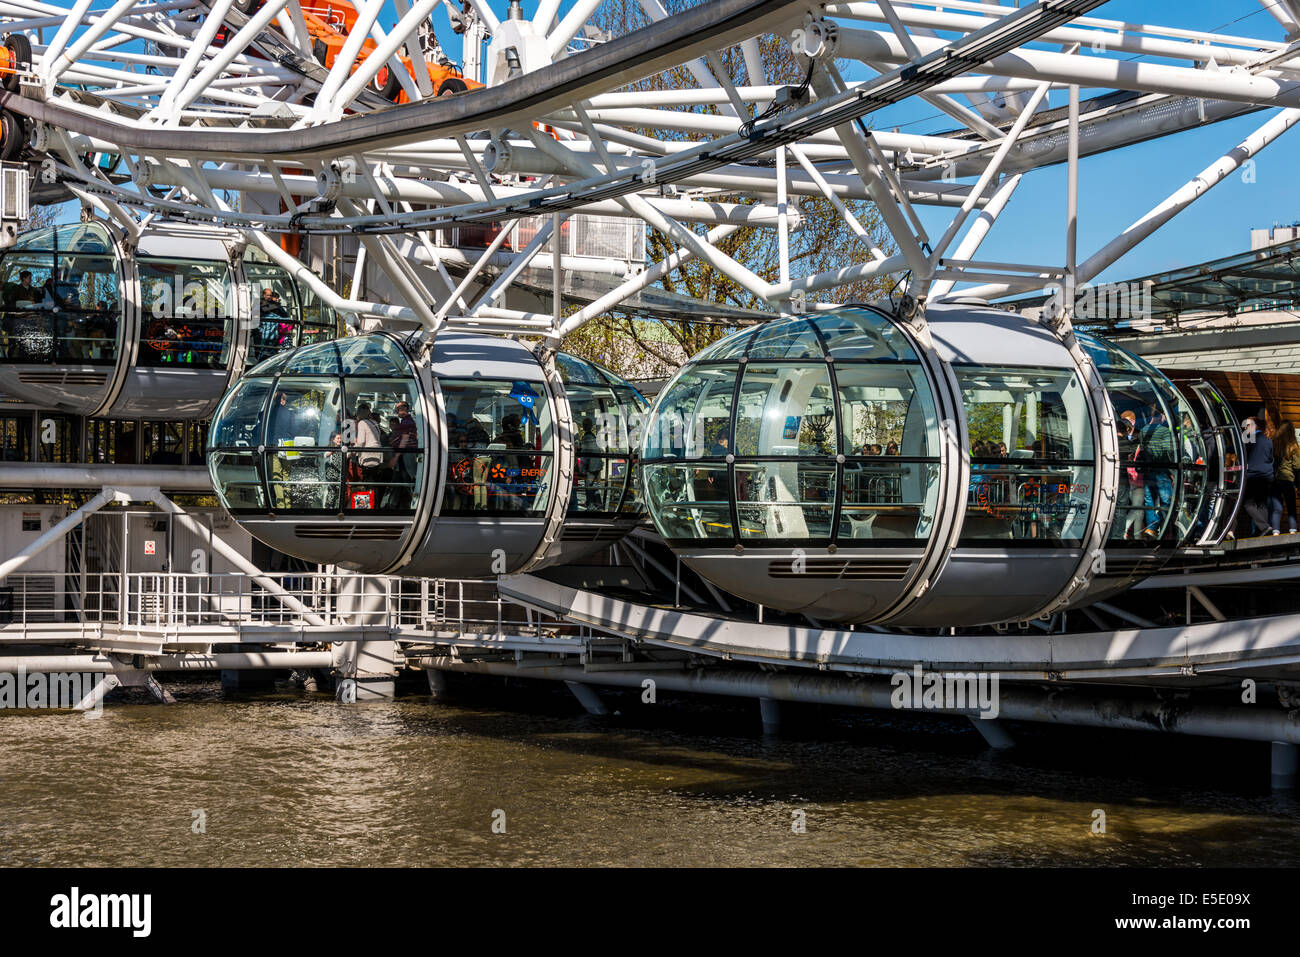 Les passagers commençant leur voyage sur le London Eye, une grande roue sur la rive sud de la Tamise à Londres Banque D'Images